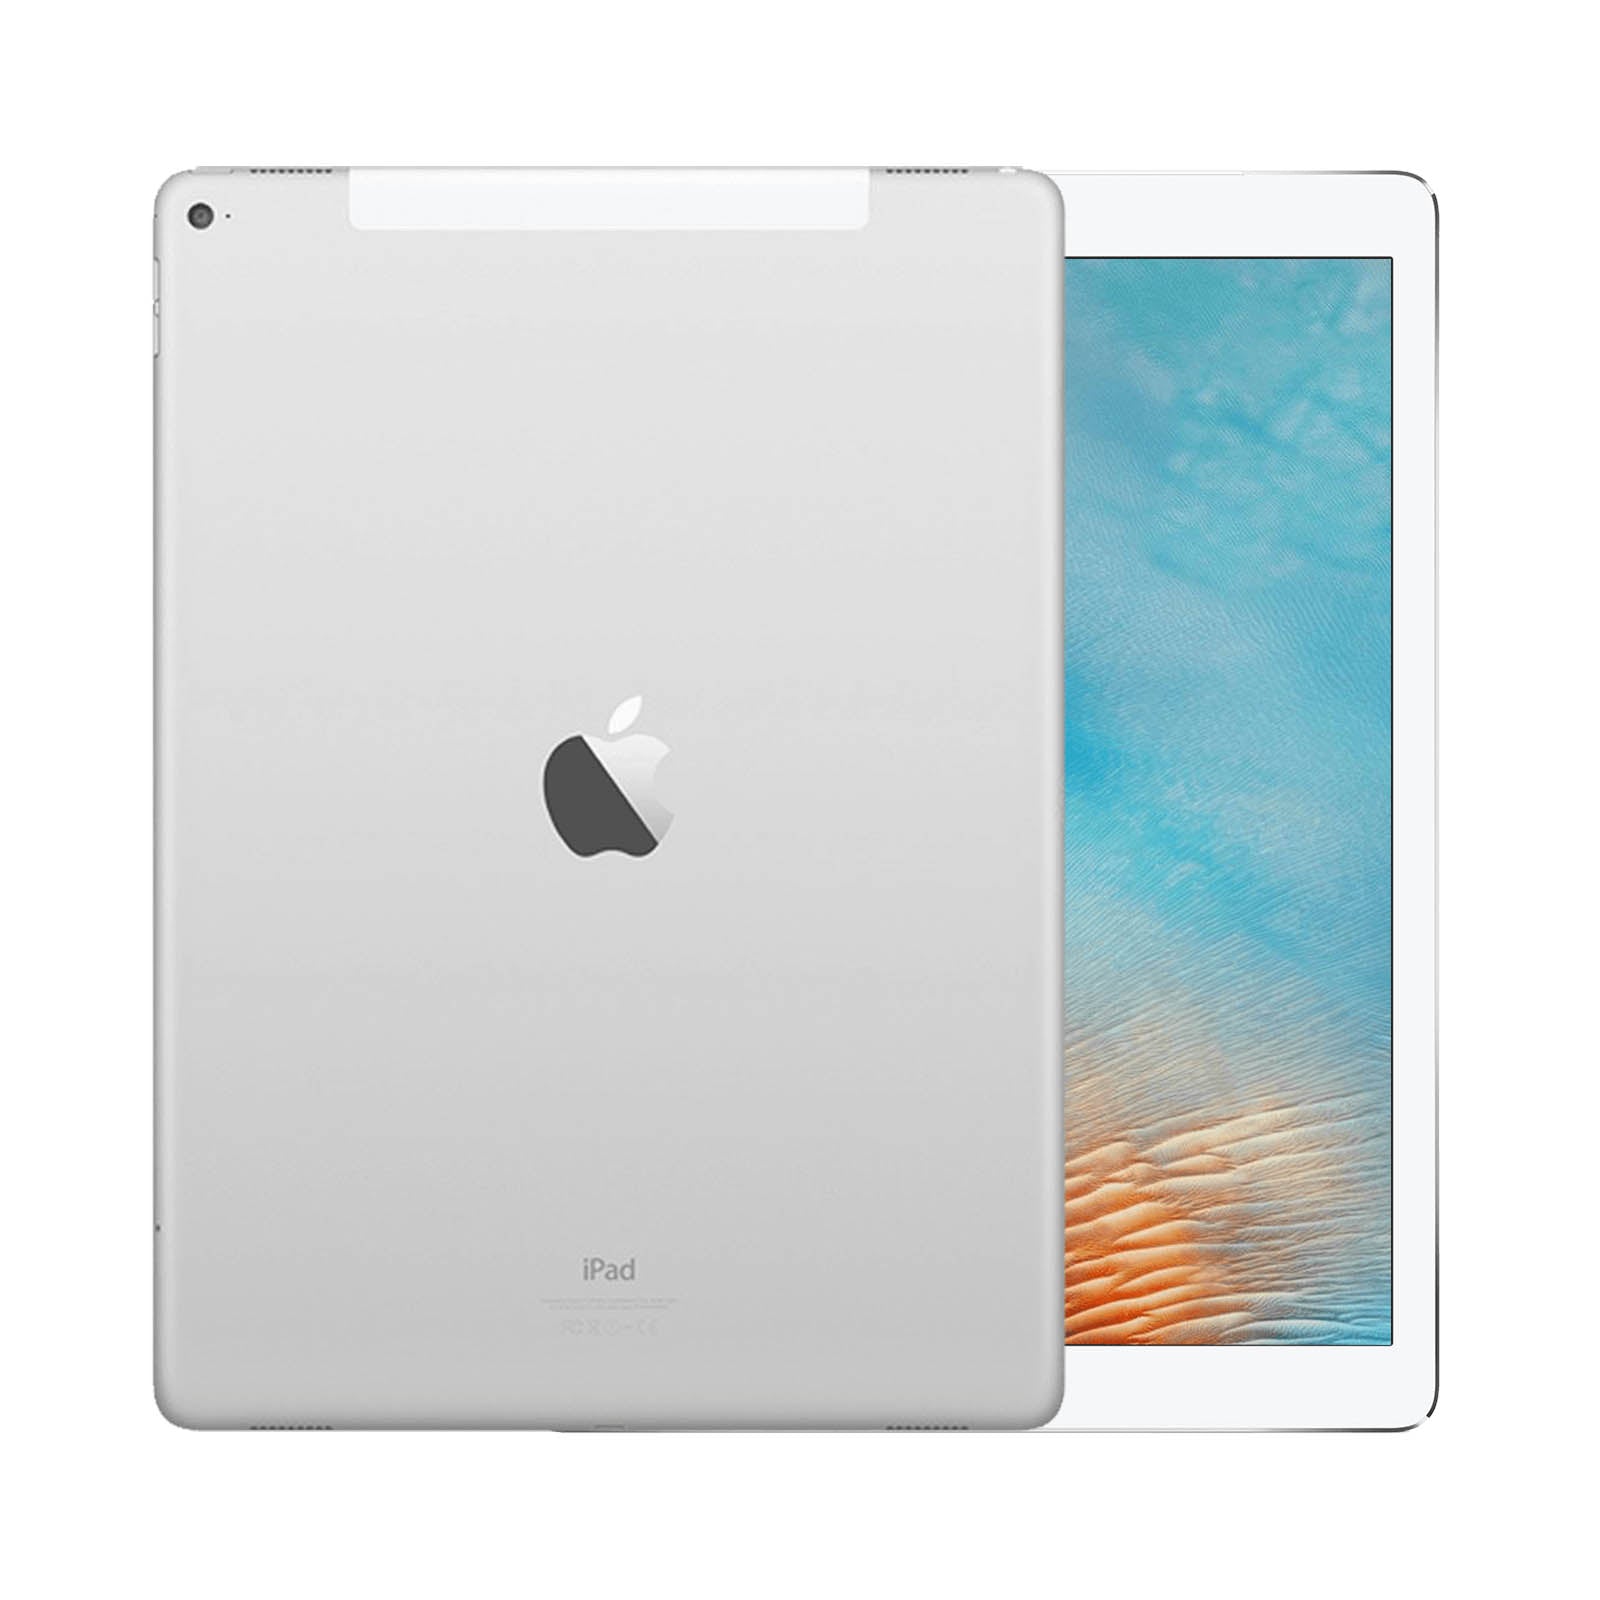 iPad Pro 12.9-in 64GB Wifi Space Gray (2016) - Refurbished product